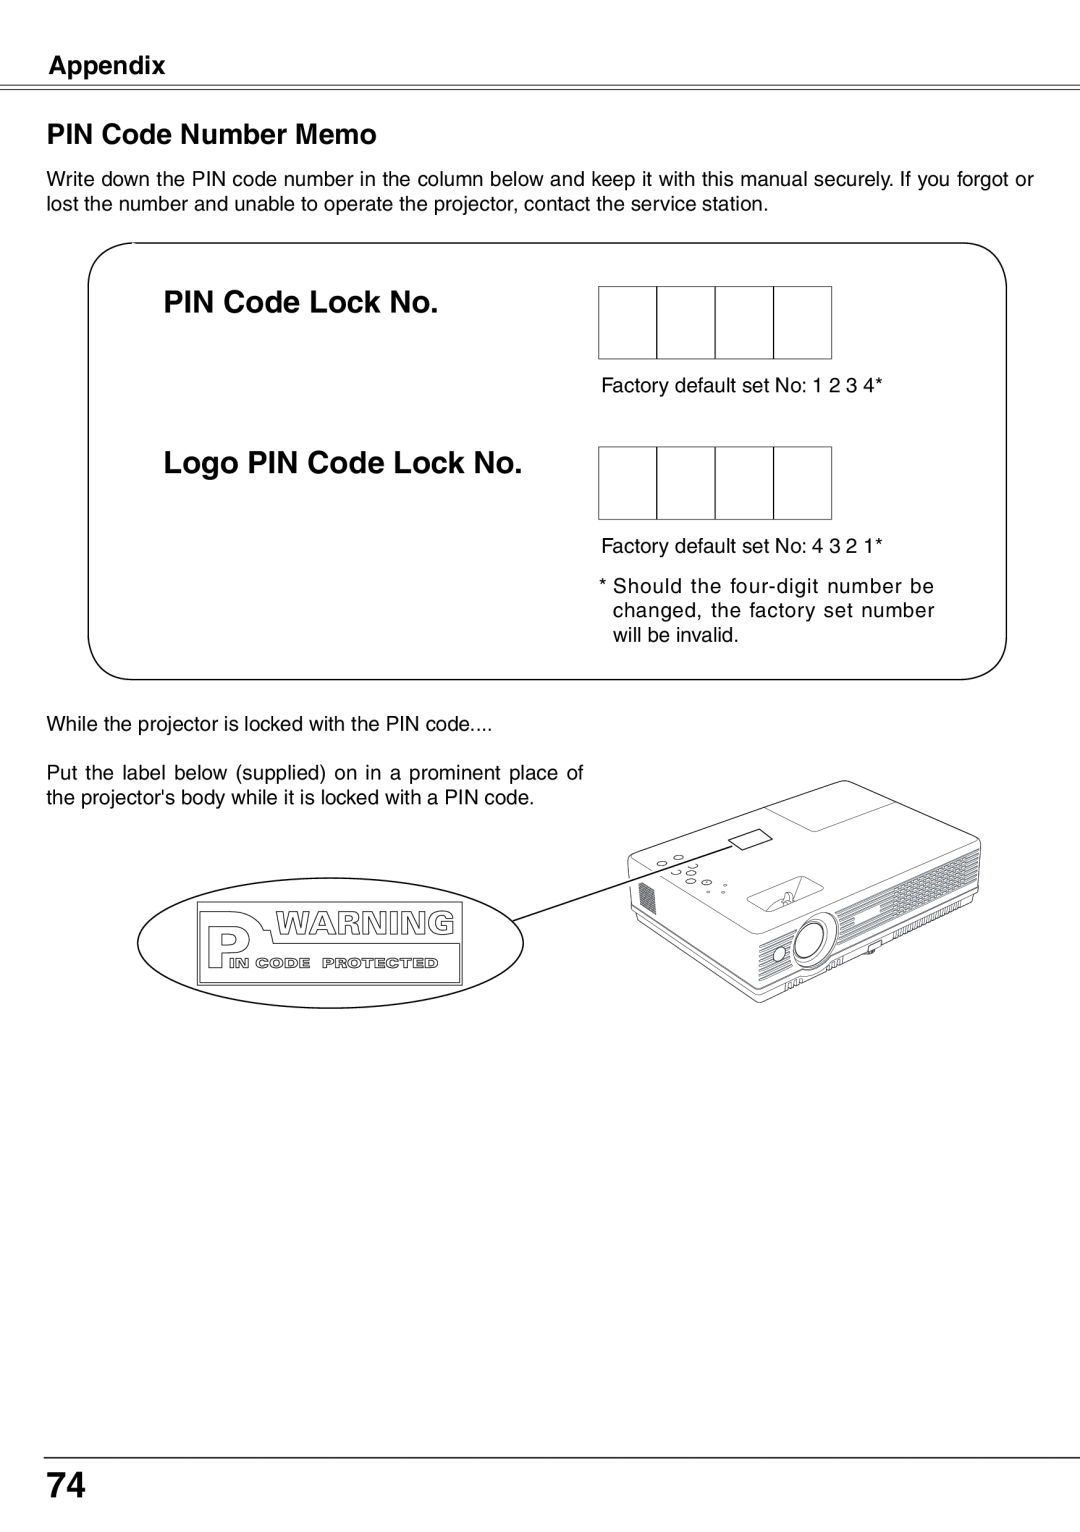 Eiki LC-XD25 owner manual PIN Code Number Memo, Logo PIN Code Lock No, Appendix 